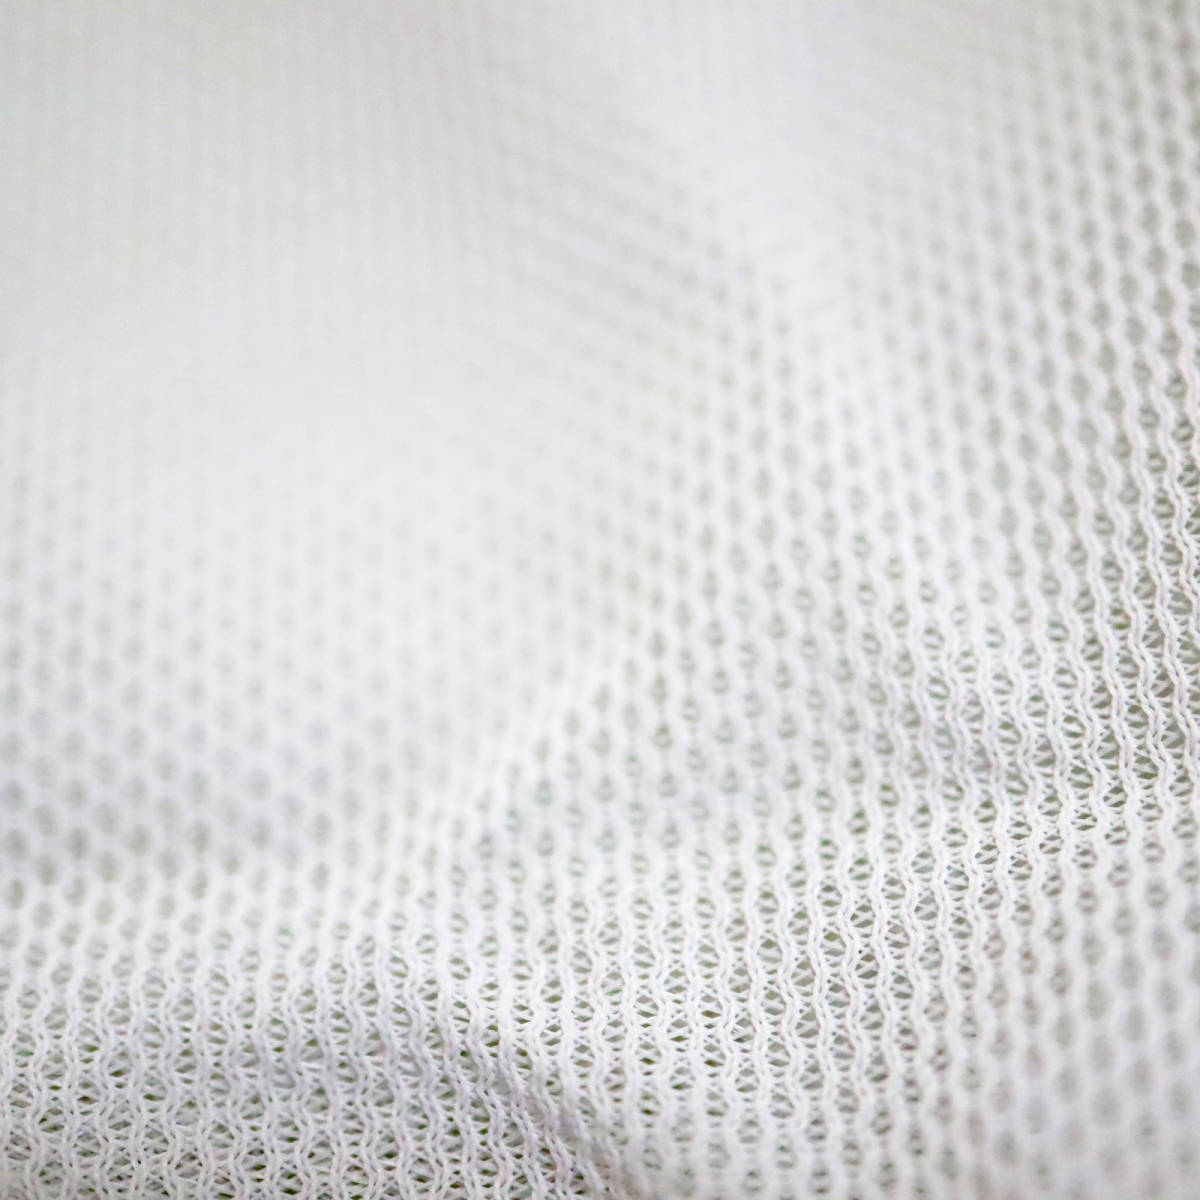 rm1392 Yシャツ 半袖 スクールシャツ 白シャツ 首回り38 メンズ 紳士 ポリ100 未使用 新品タグあり 長期保管品の画像4